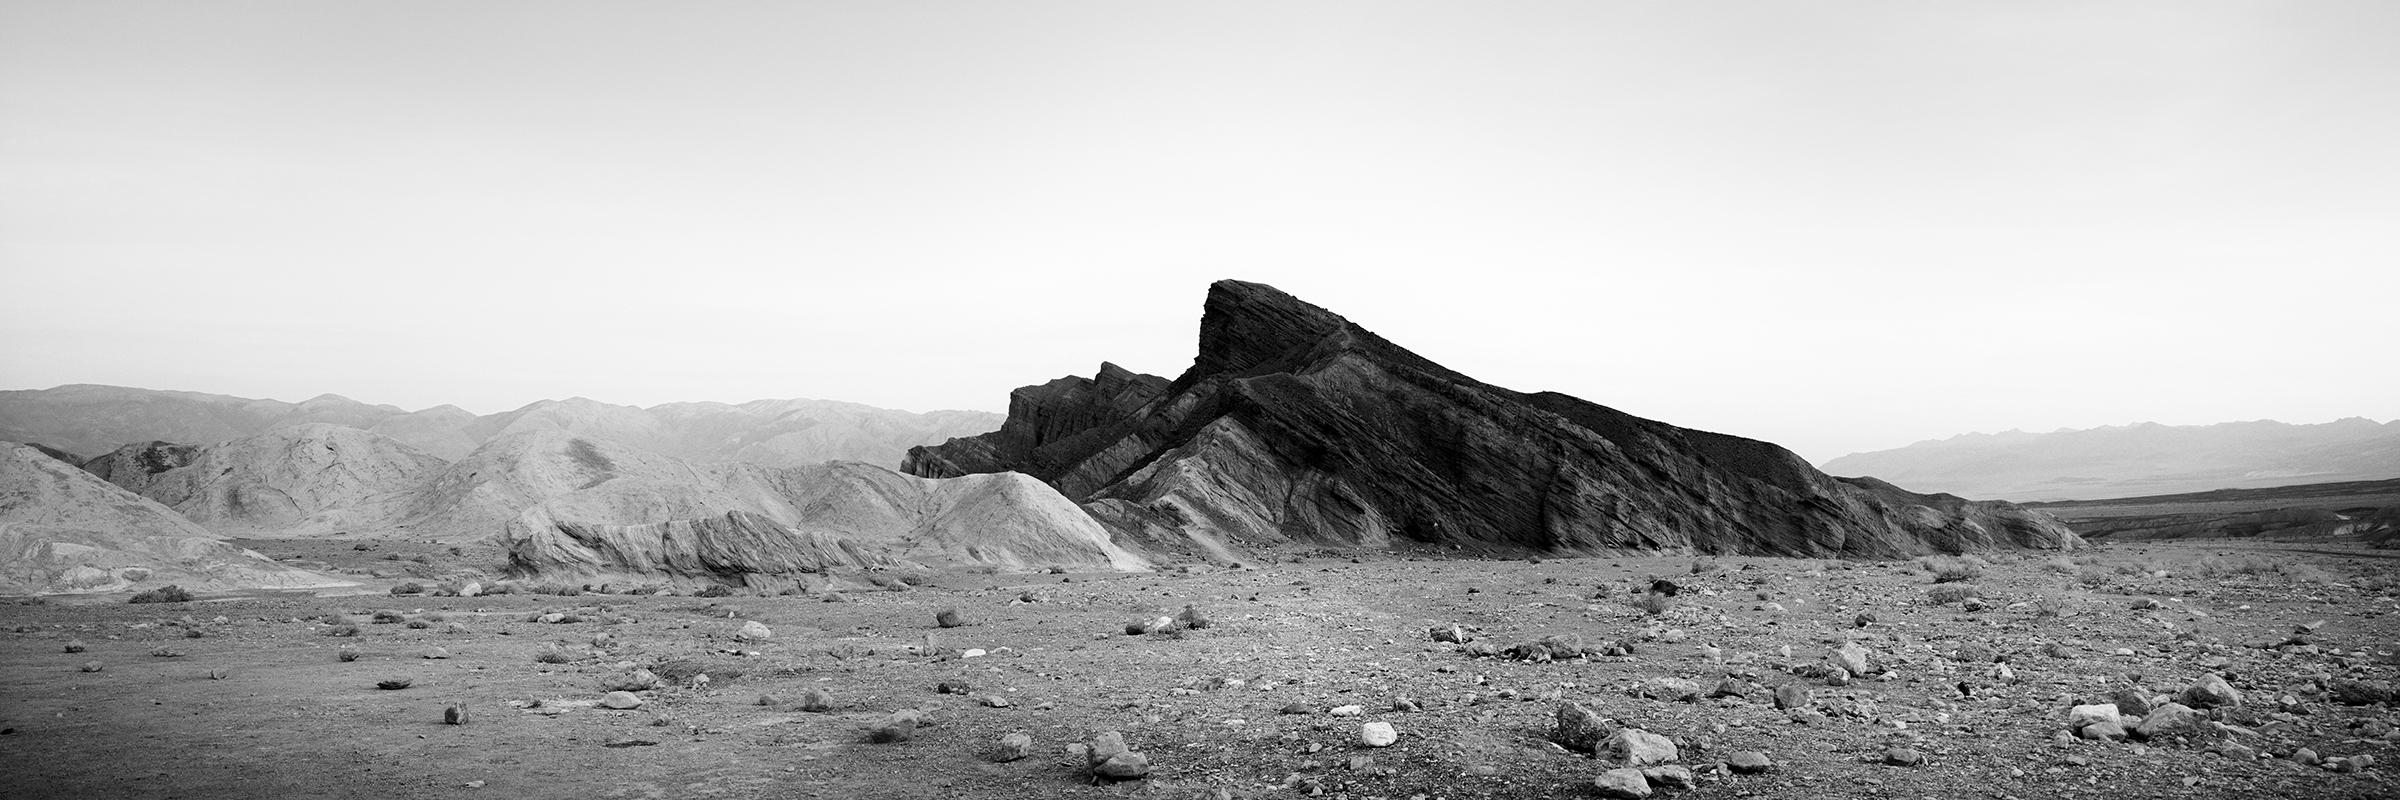 Gerald Berghammer Landscape Photograph – Black Rock, Berge, Death Valley, USA, schwarz-weiße Landschaftsfotografie